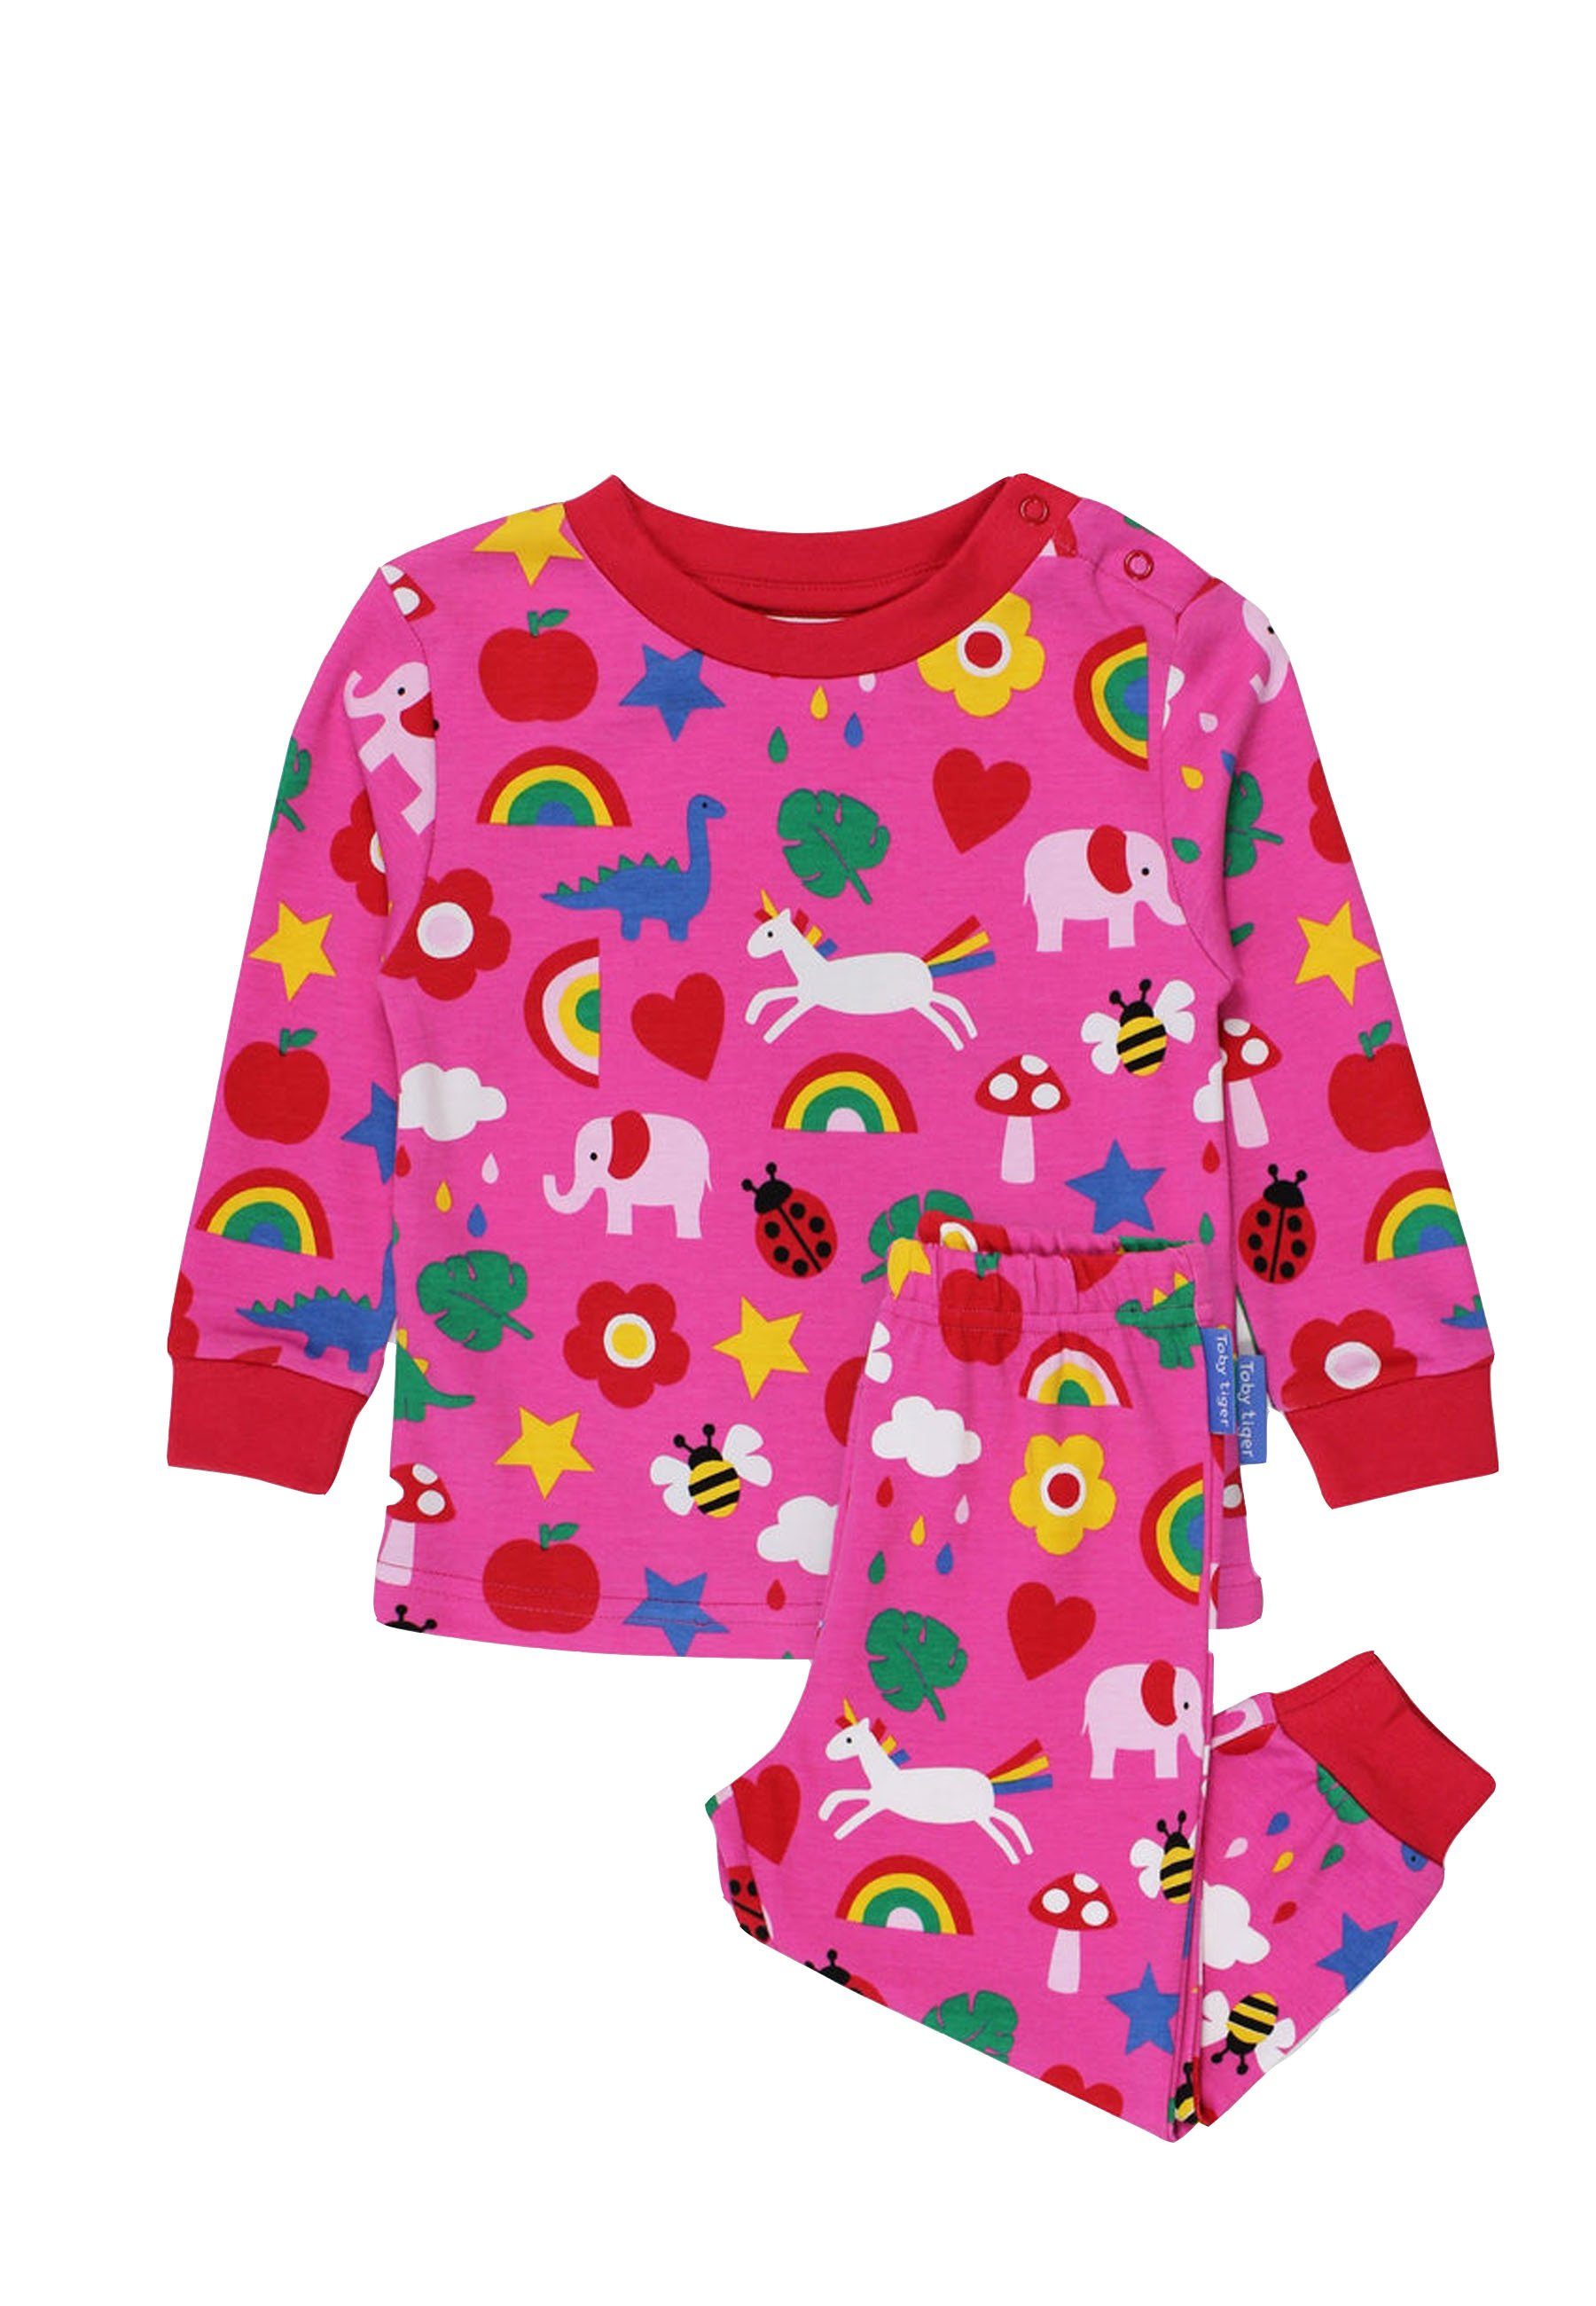 Schlafanzug mit Toby Tiger Schlafanzug Spielzeug Print